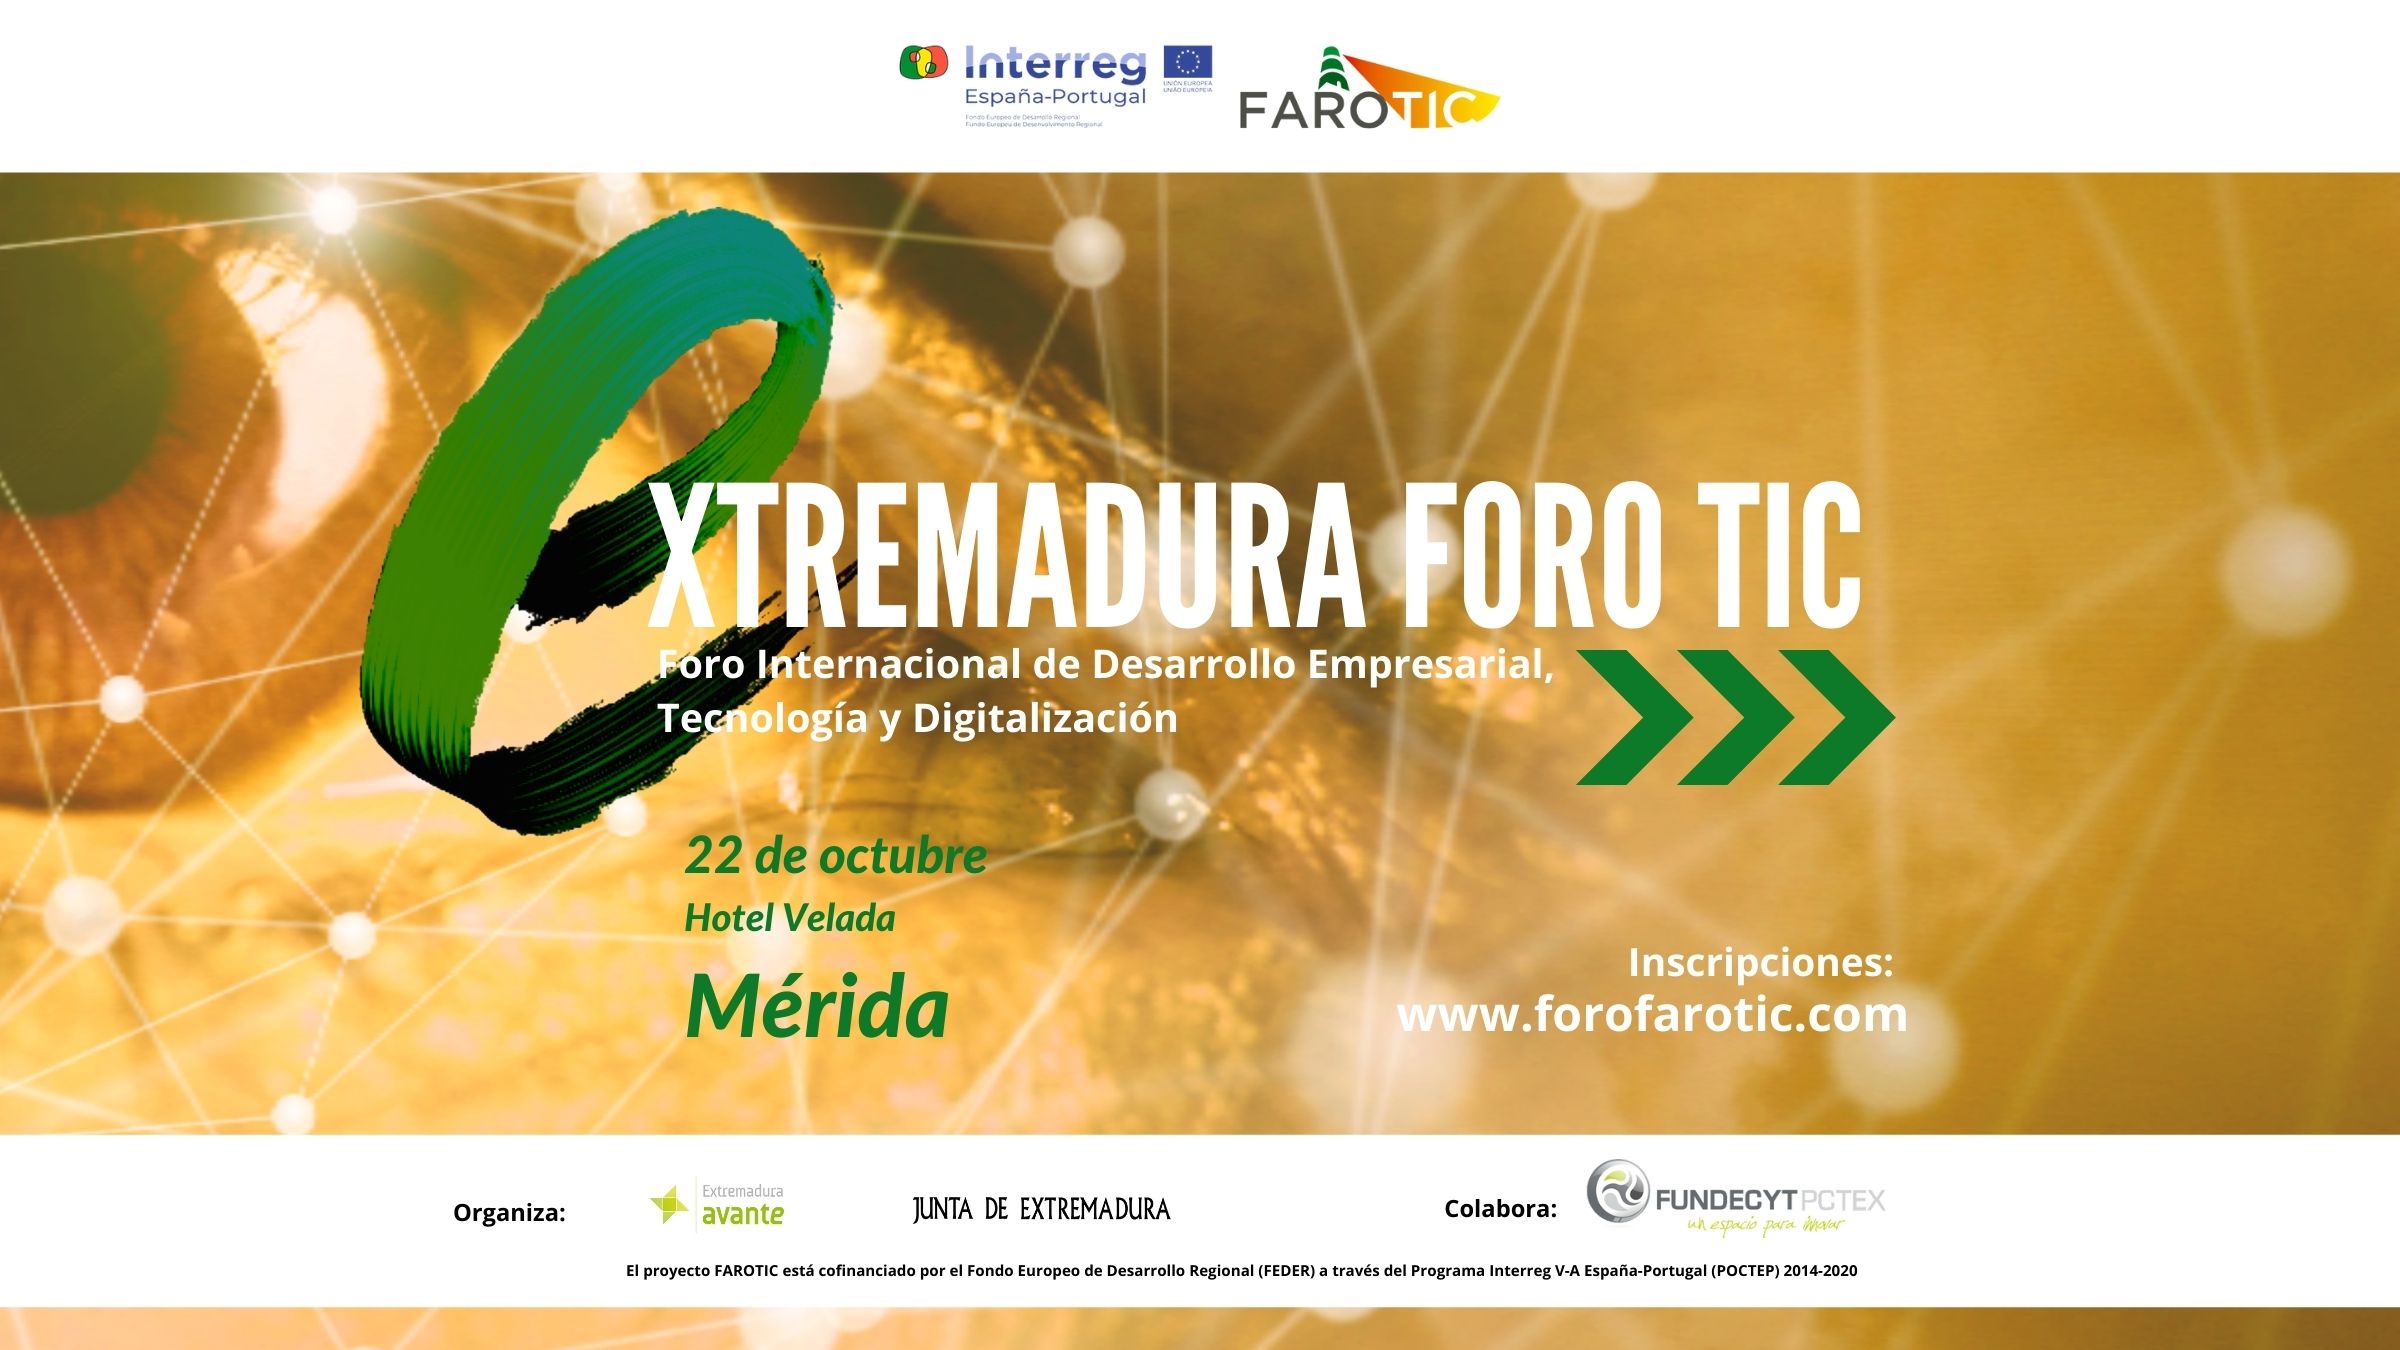 Foro Internacional de Desarrollo Empresarial, Tecnología y Digitalización “Extremadura Foro TIC”. Proyecto FAROTIC